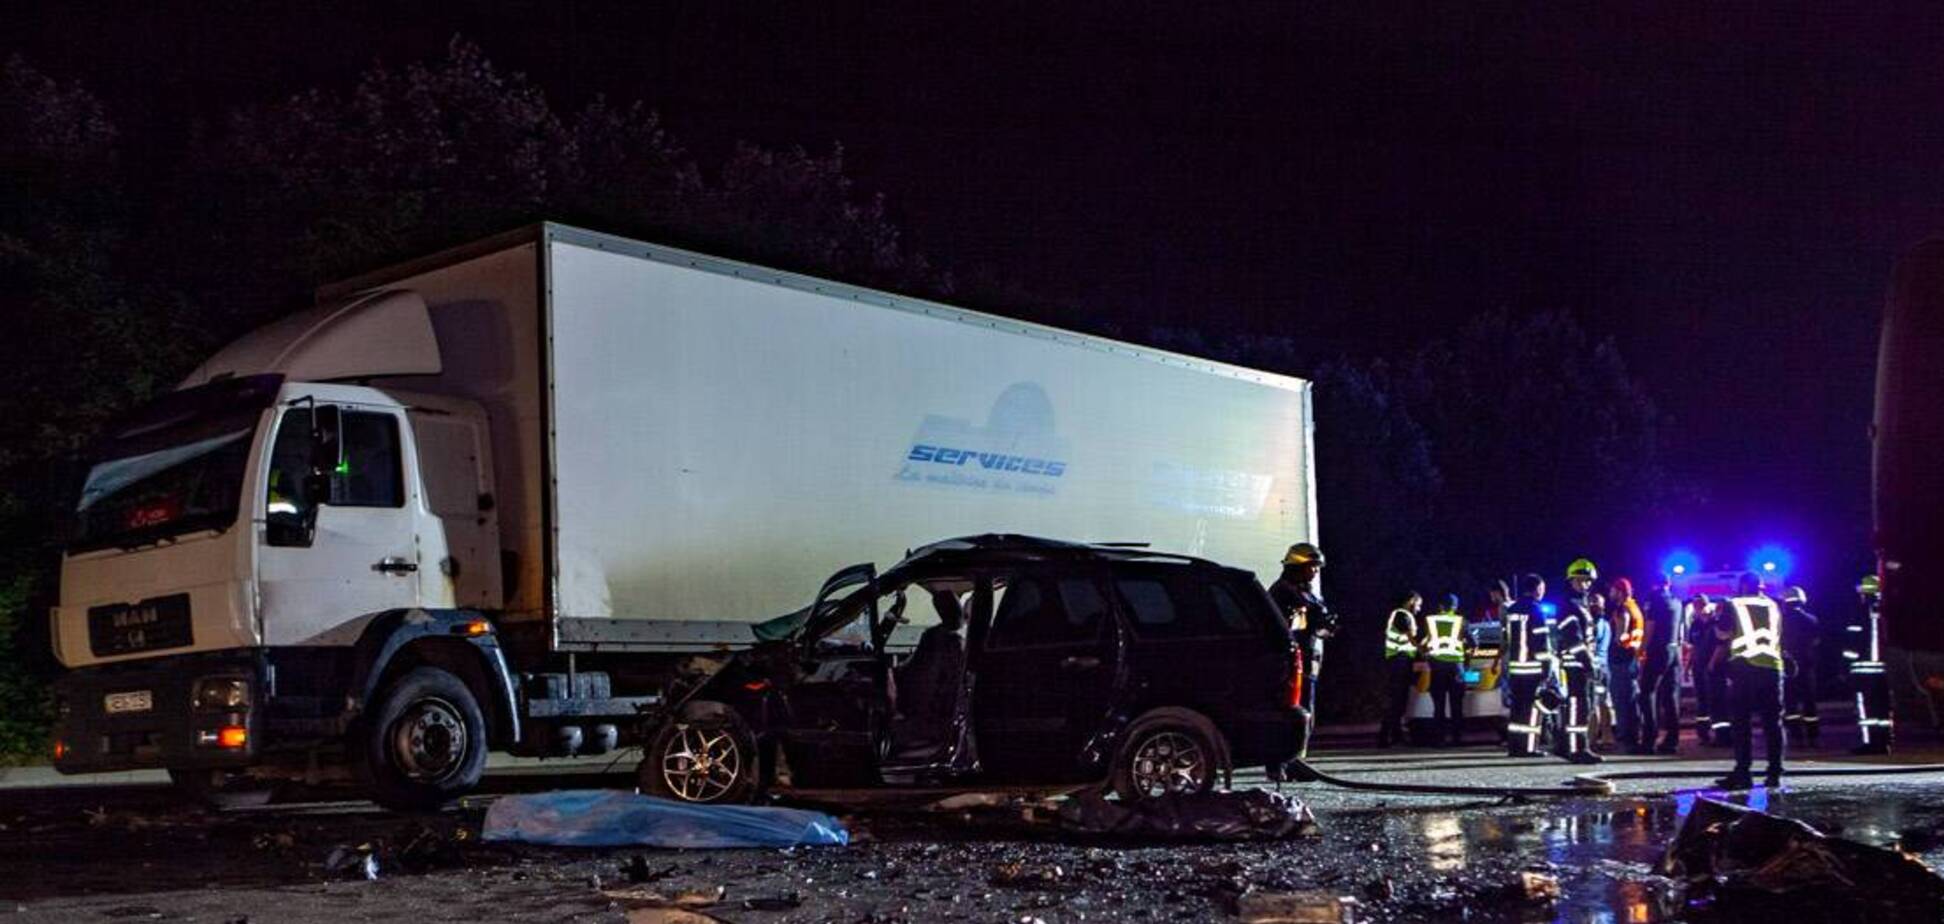 В Днепре произошло лобовое ДТП с грузовиком: есть погибшие и пострадавшие. Фото 18+